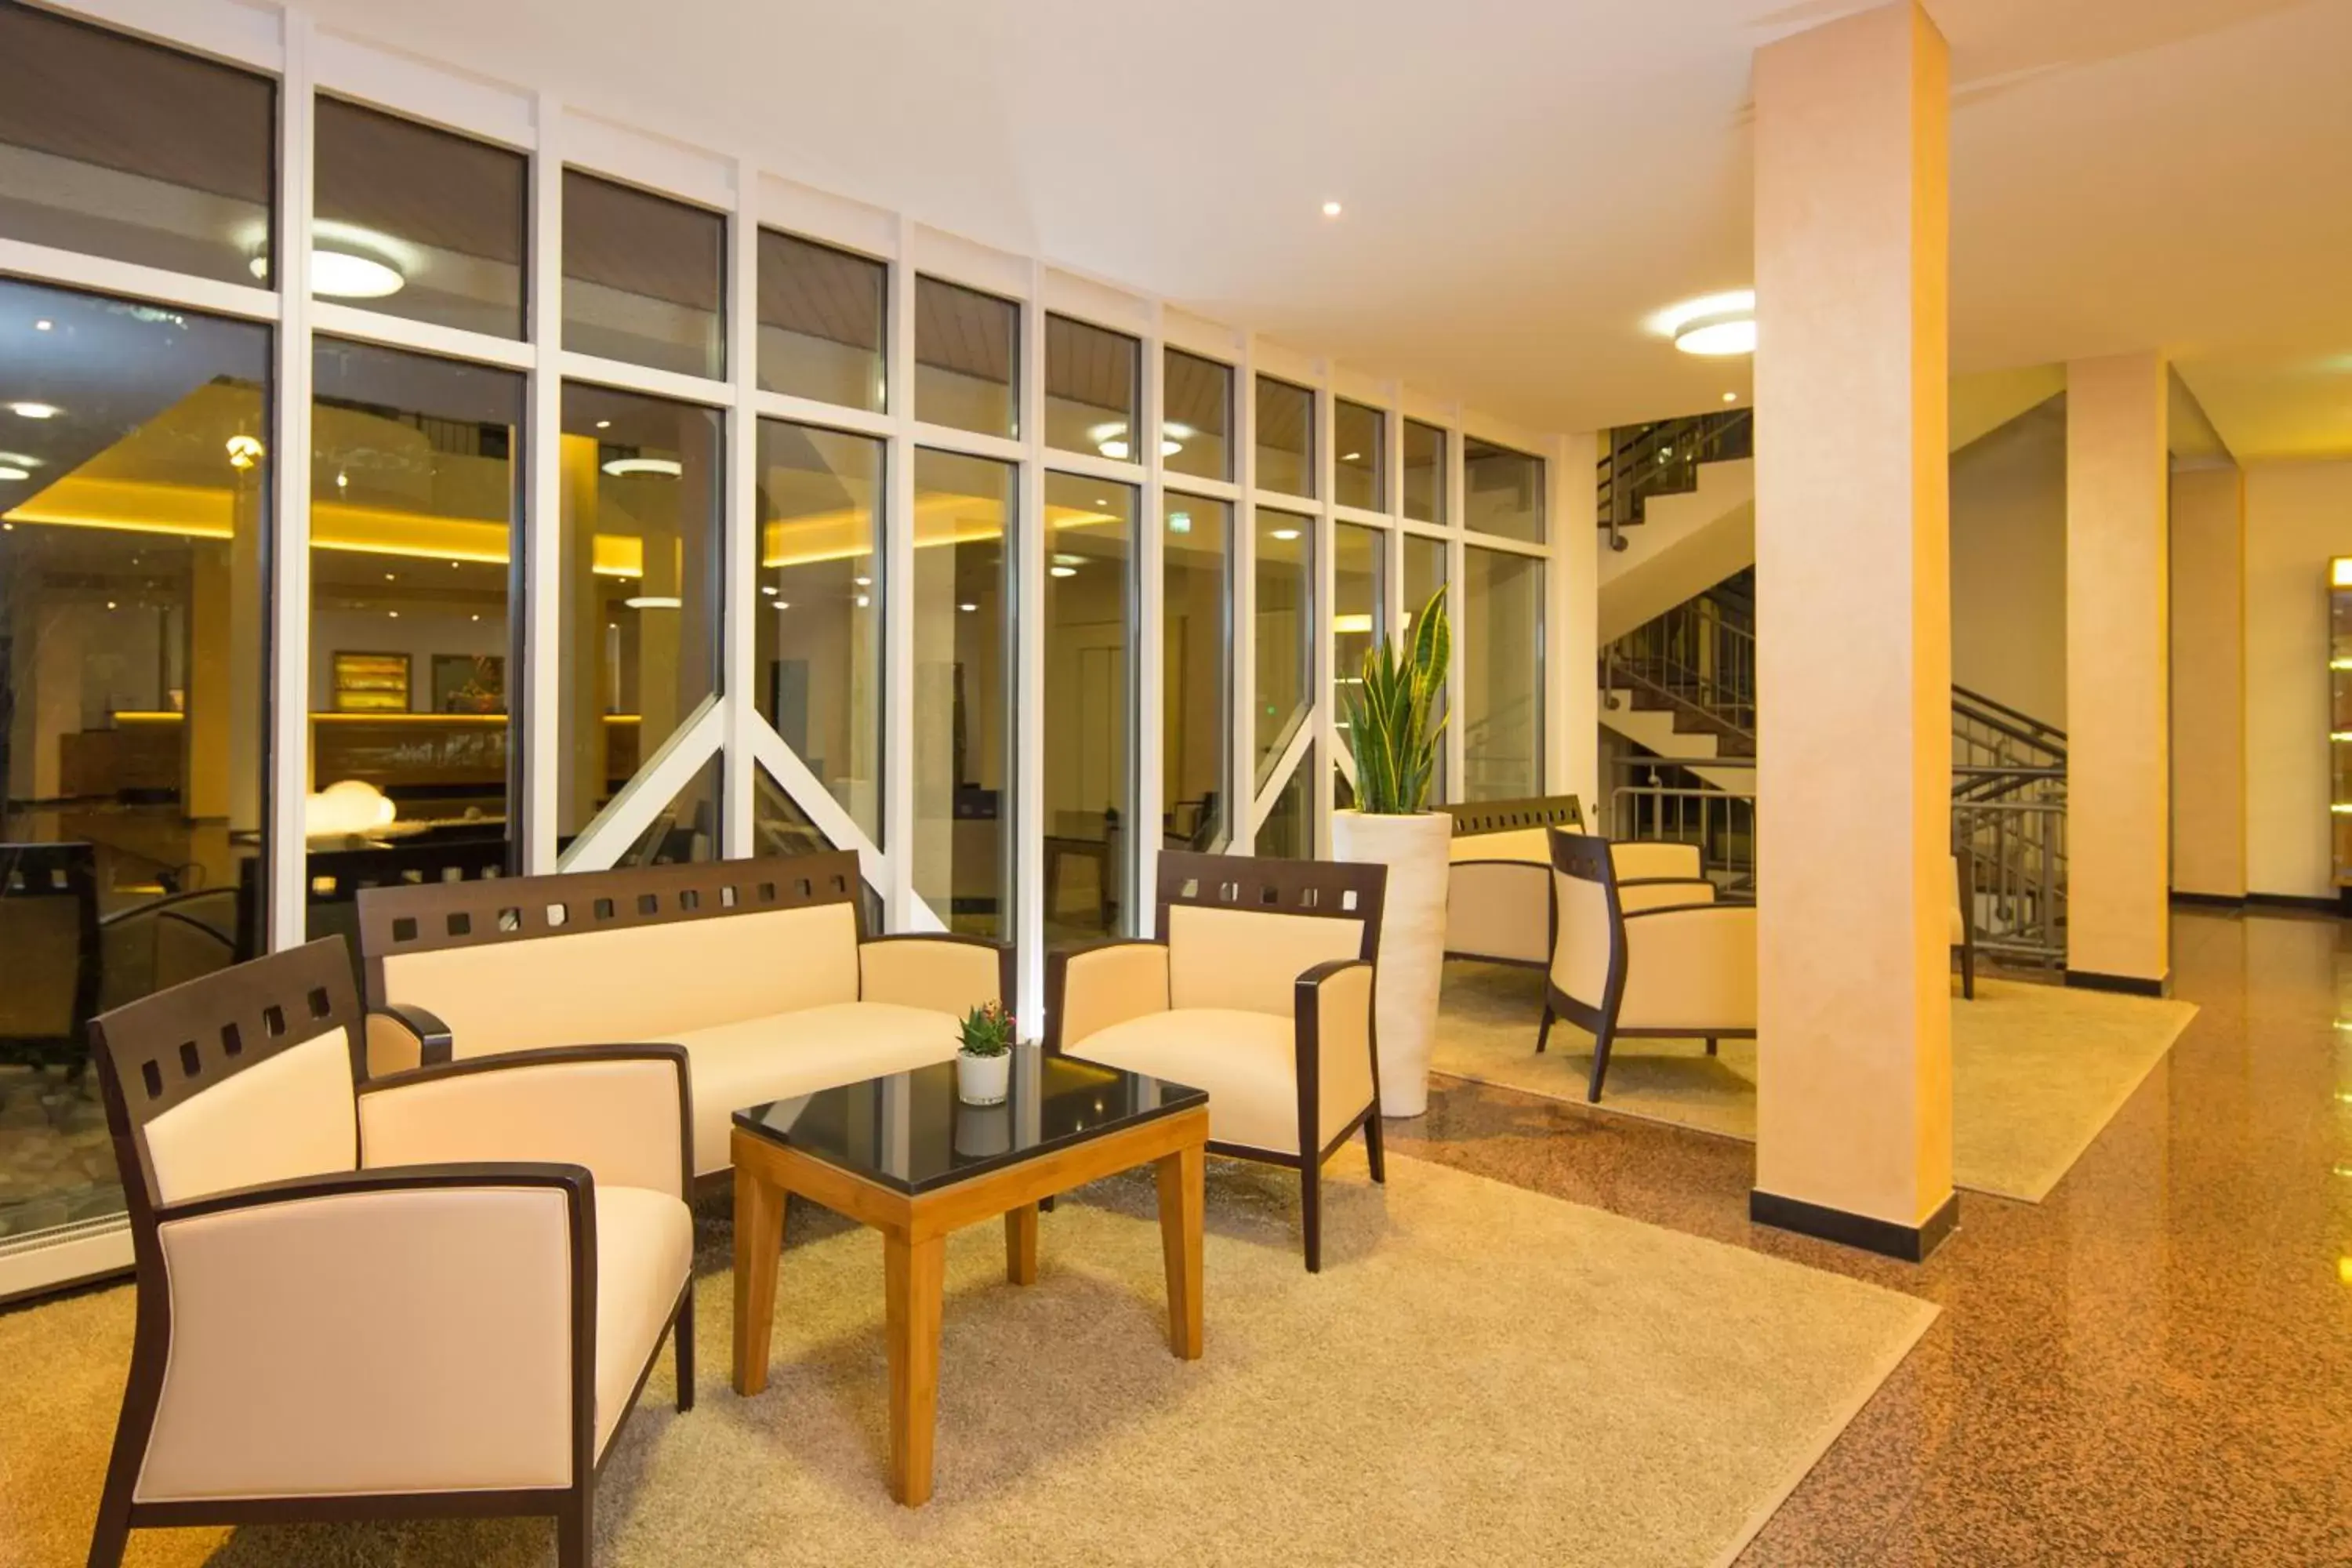 Lobby or reception, Lobby/Reception in Best Western Plus Hotel Am Schlossberg